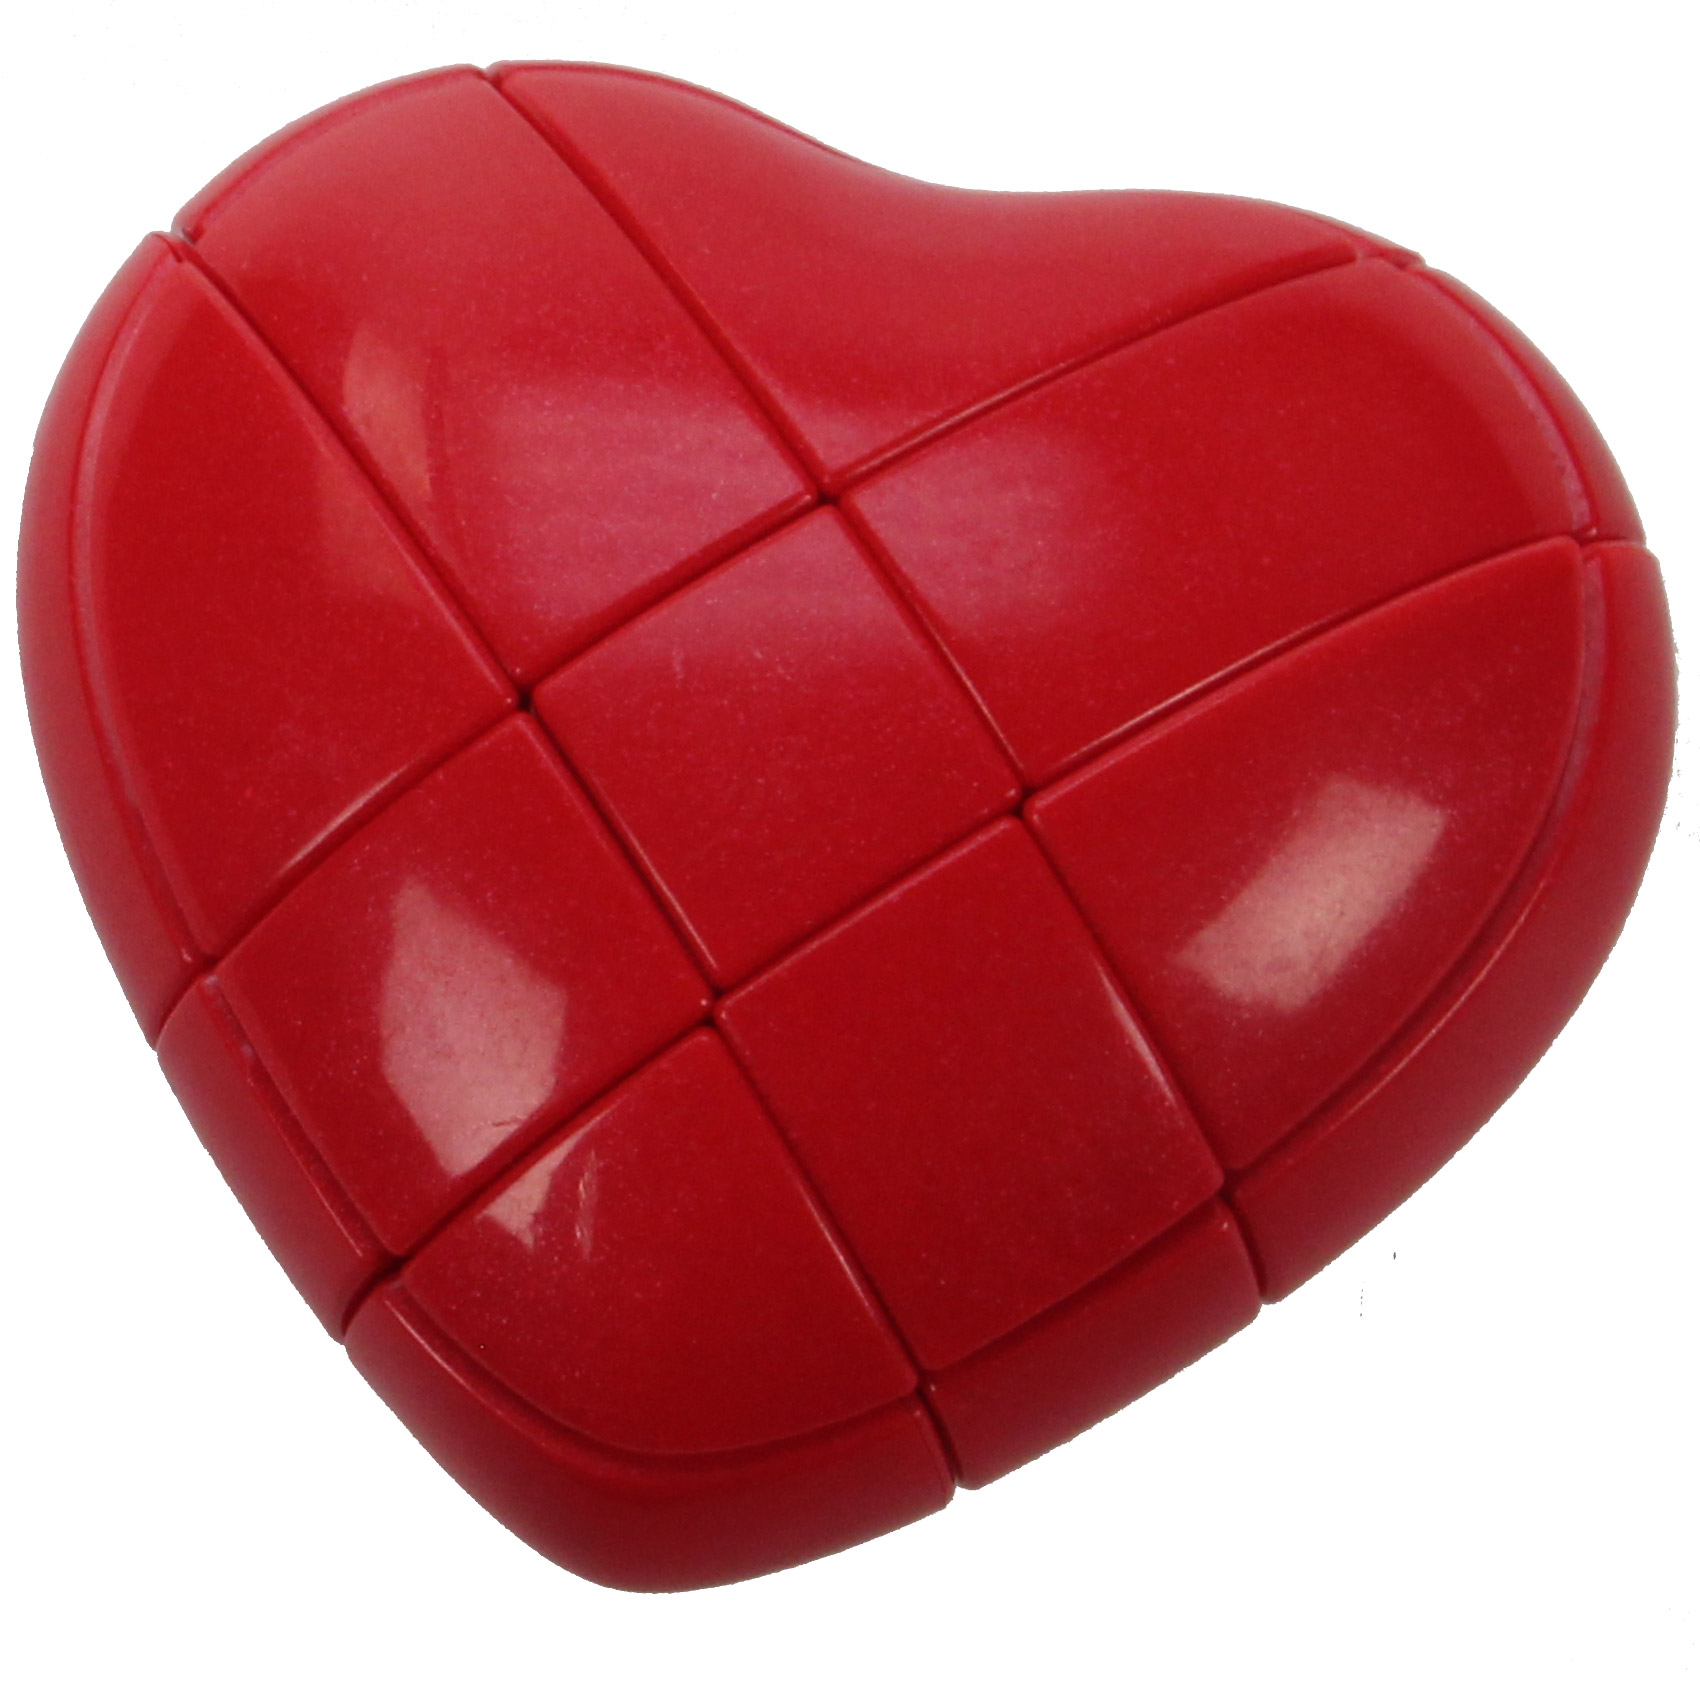 Rubik's cube : coeur rouge